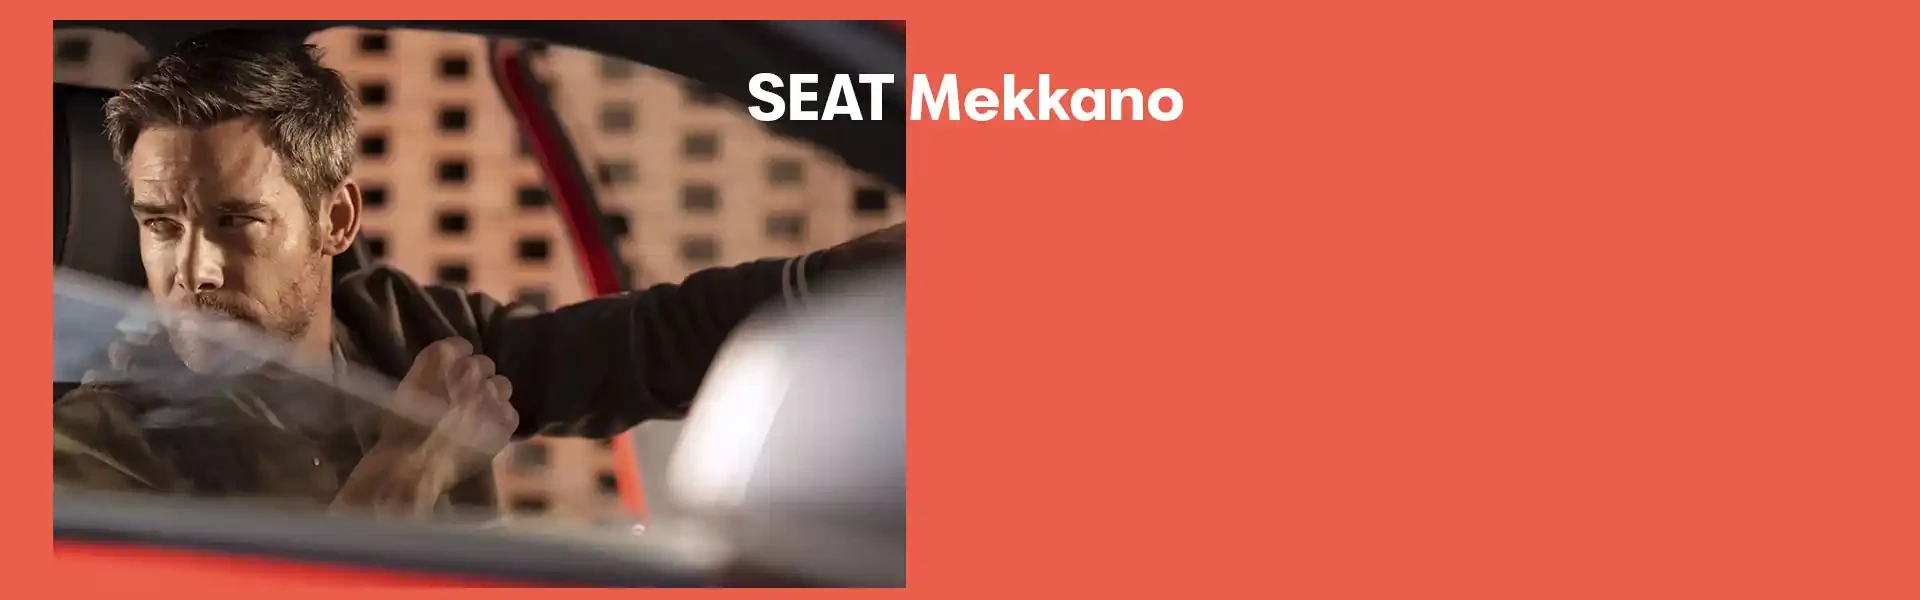 Seat Finanziamento Mekkano Land